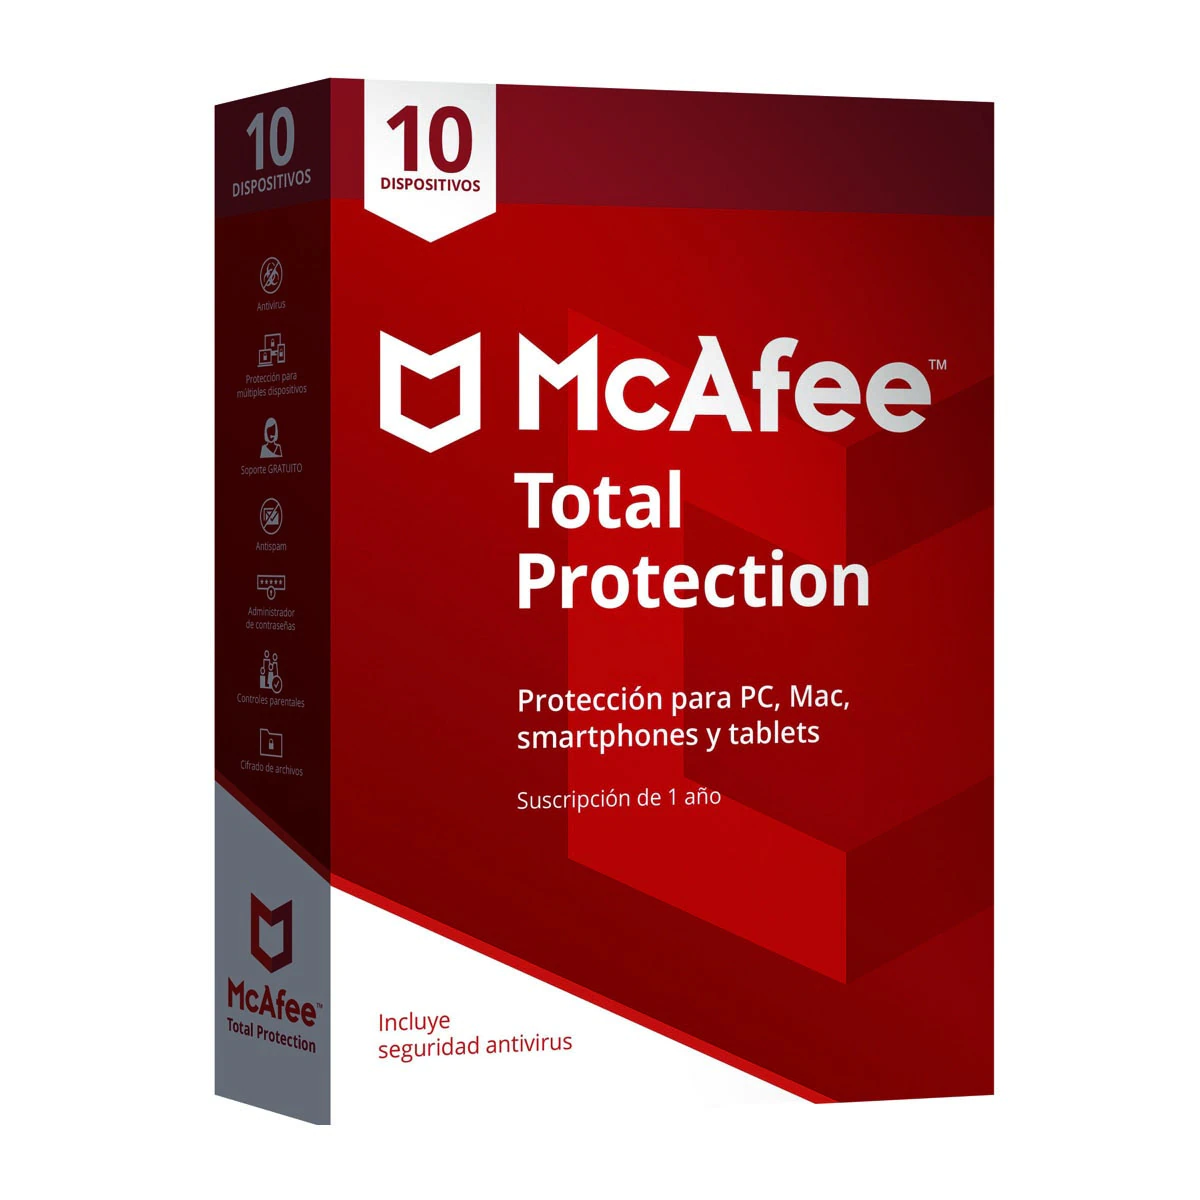 McAfee Total Protection 10 dispositivos / 1 año suscripción